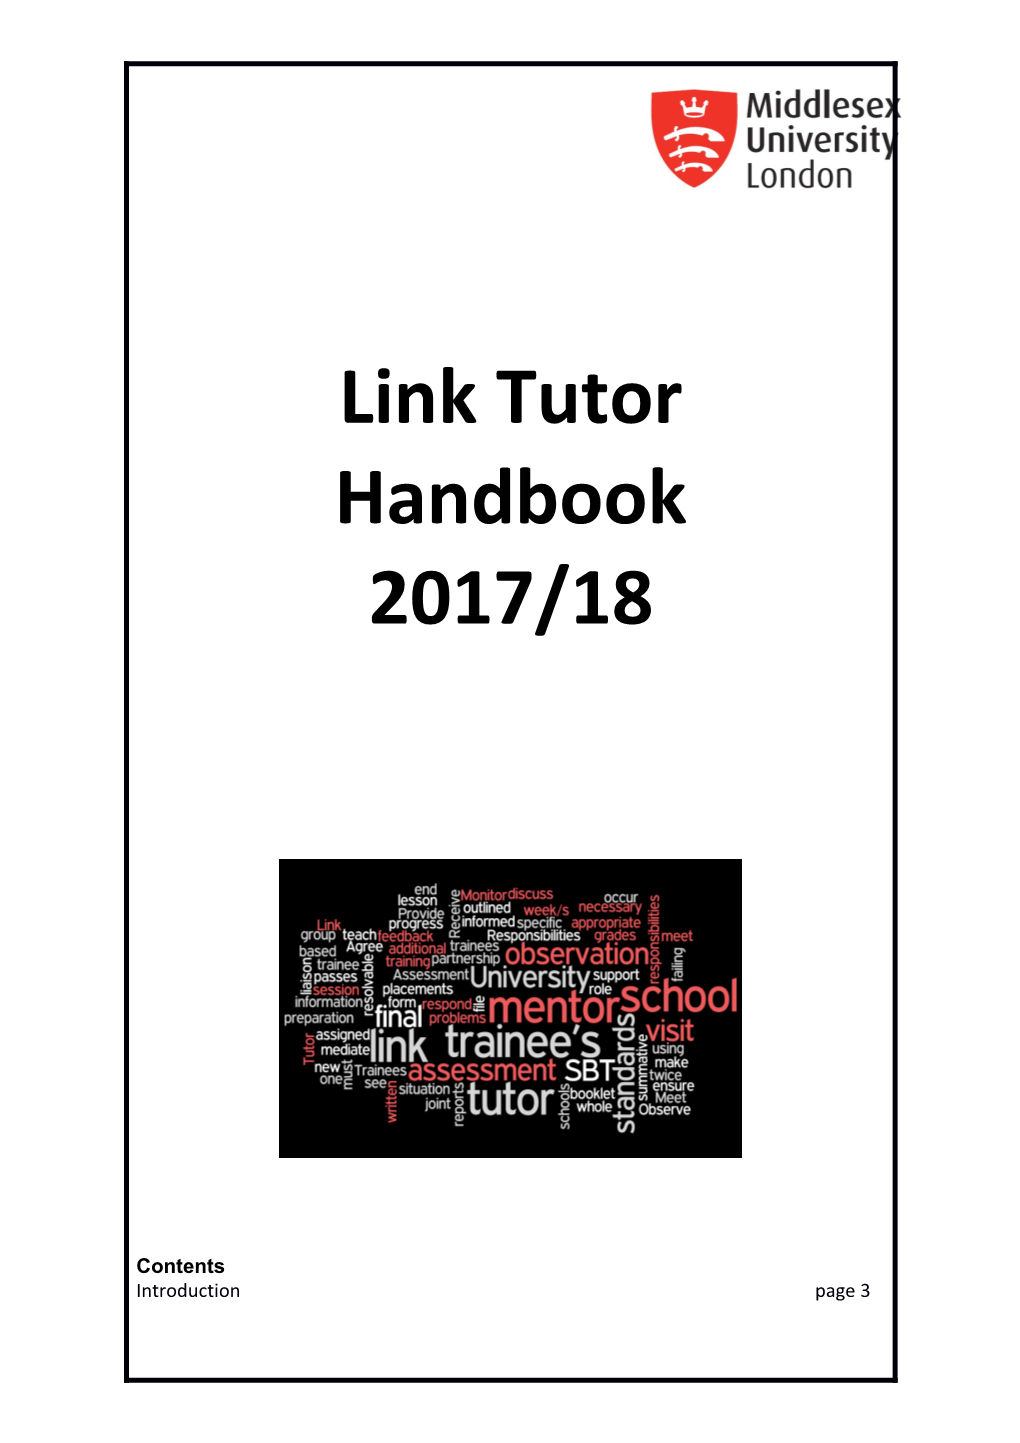 Link Tutor Handbook 2017/18